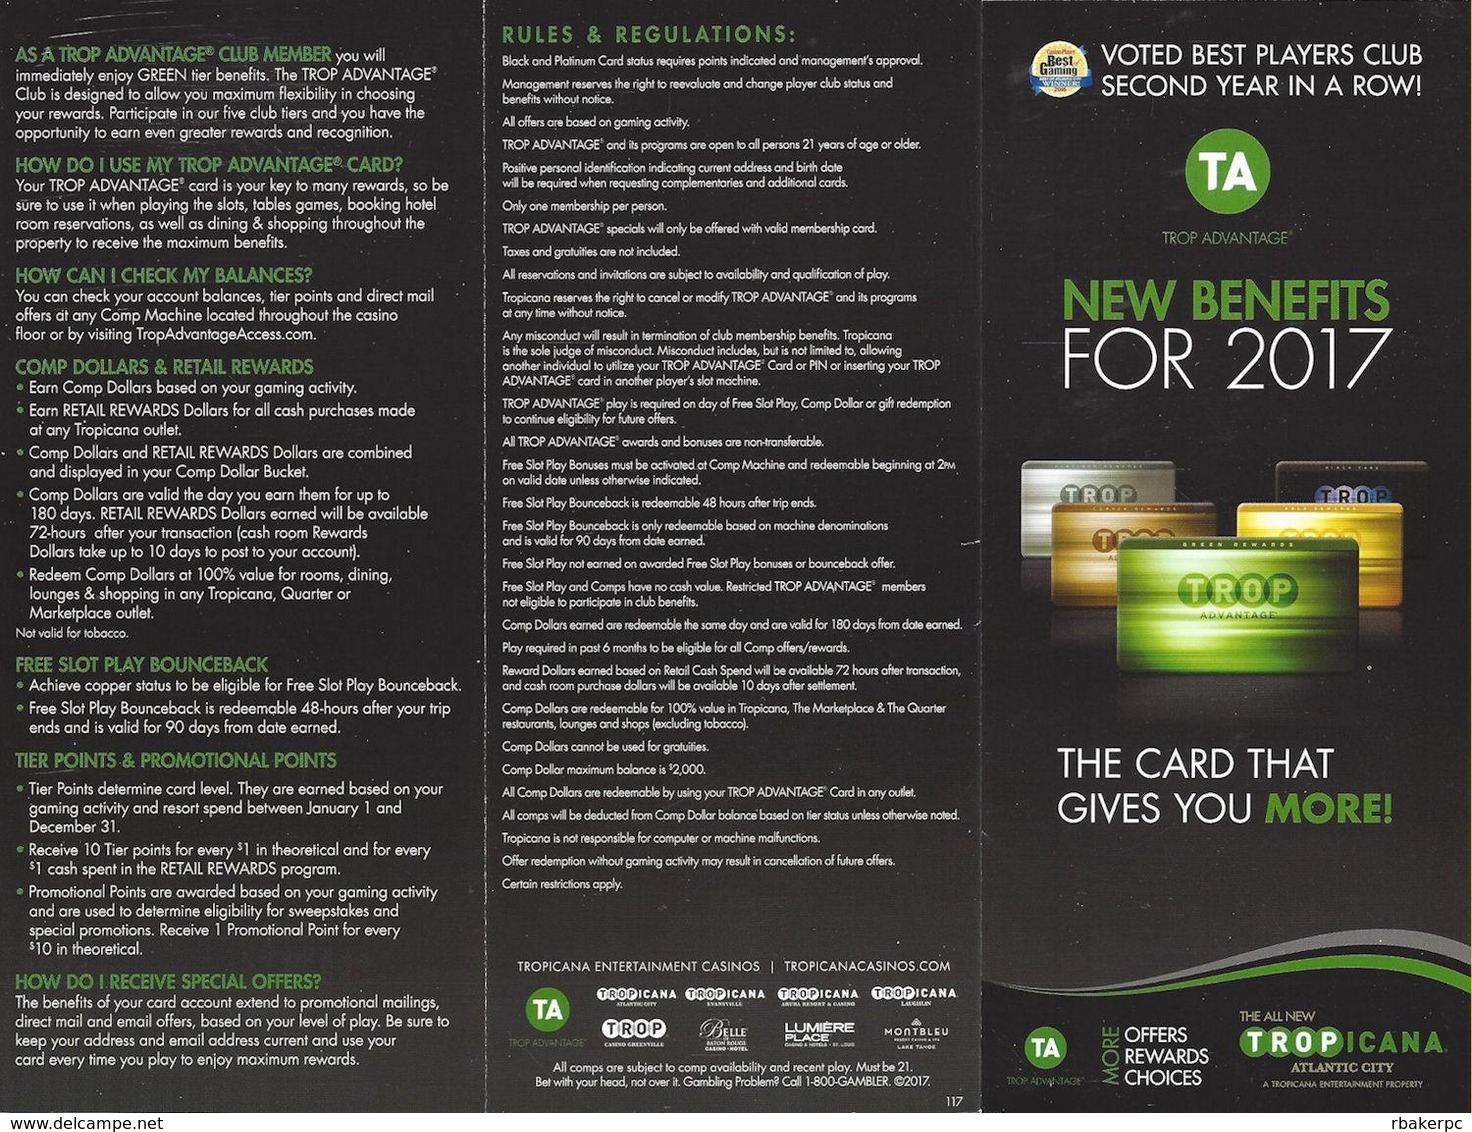 Tropicana Casino - Atlantic City, NJ - Paper 2017 Slot Card Benefits Brochure - Folded 9x4 Inches - Cartes De Casino